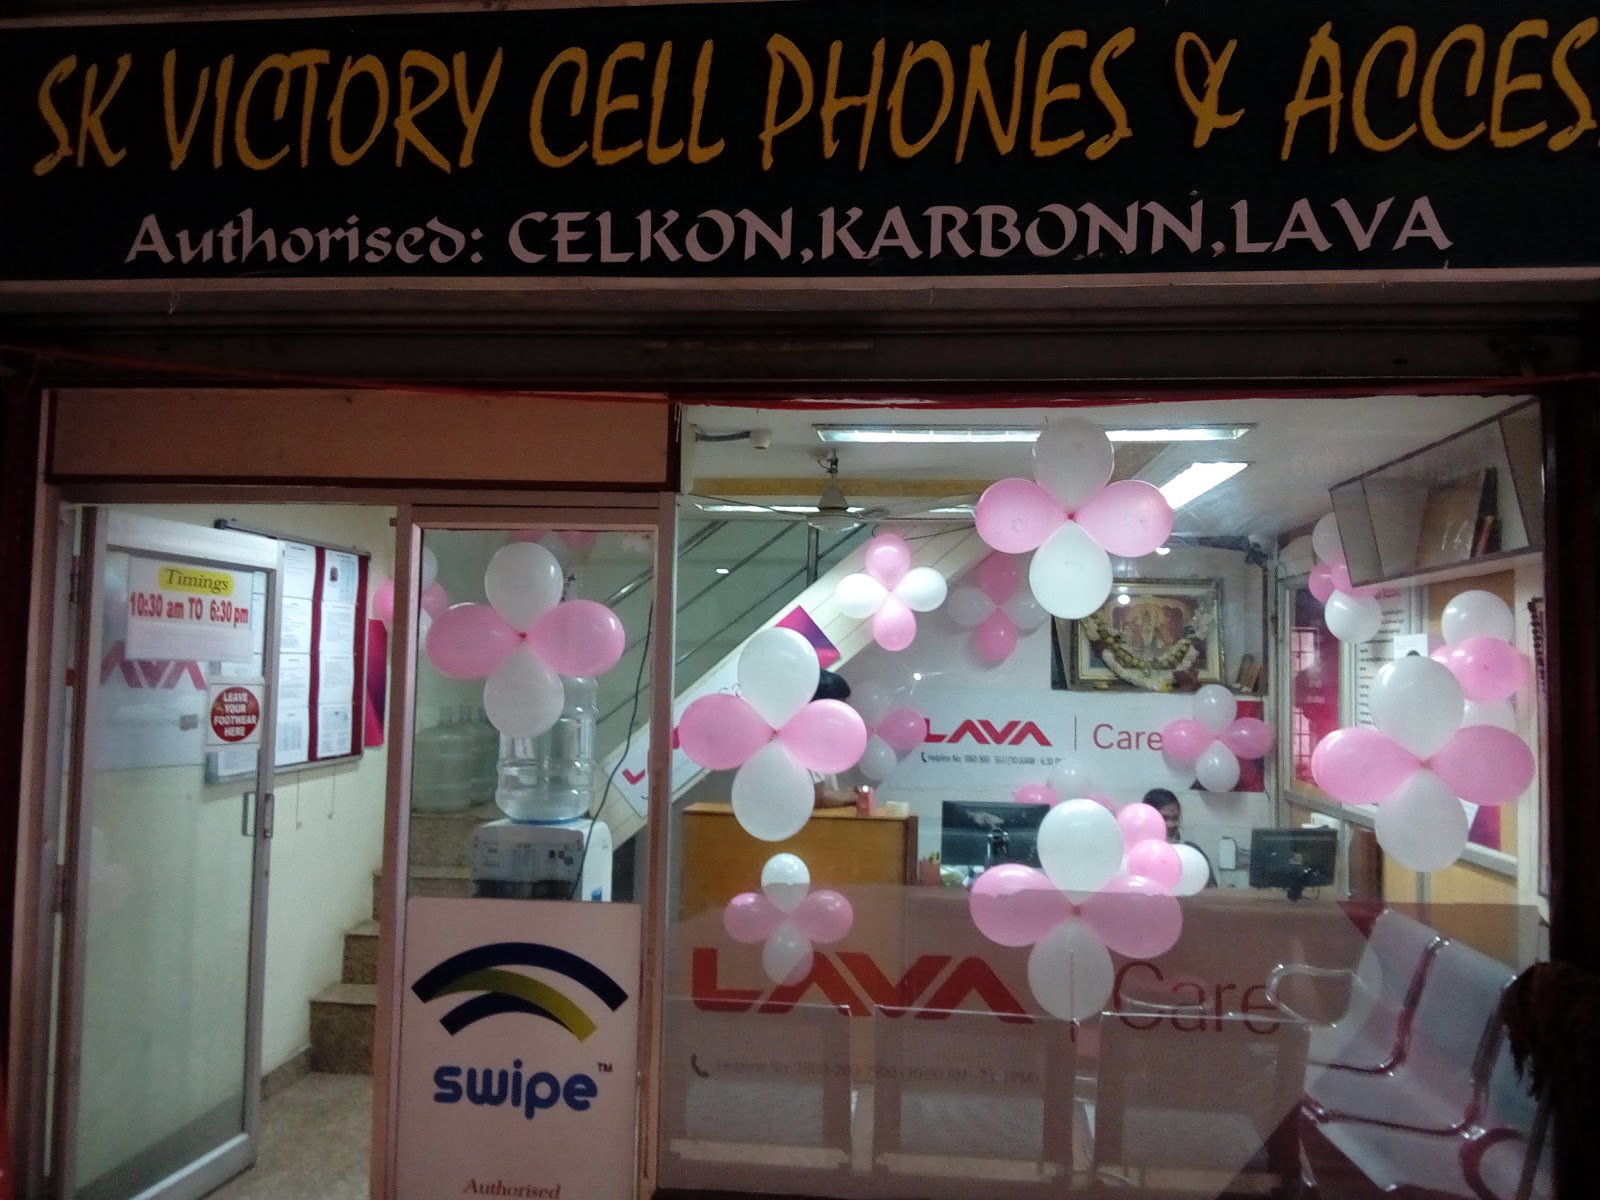 SK Victory Celphones & Accessories